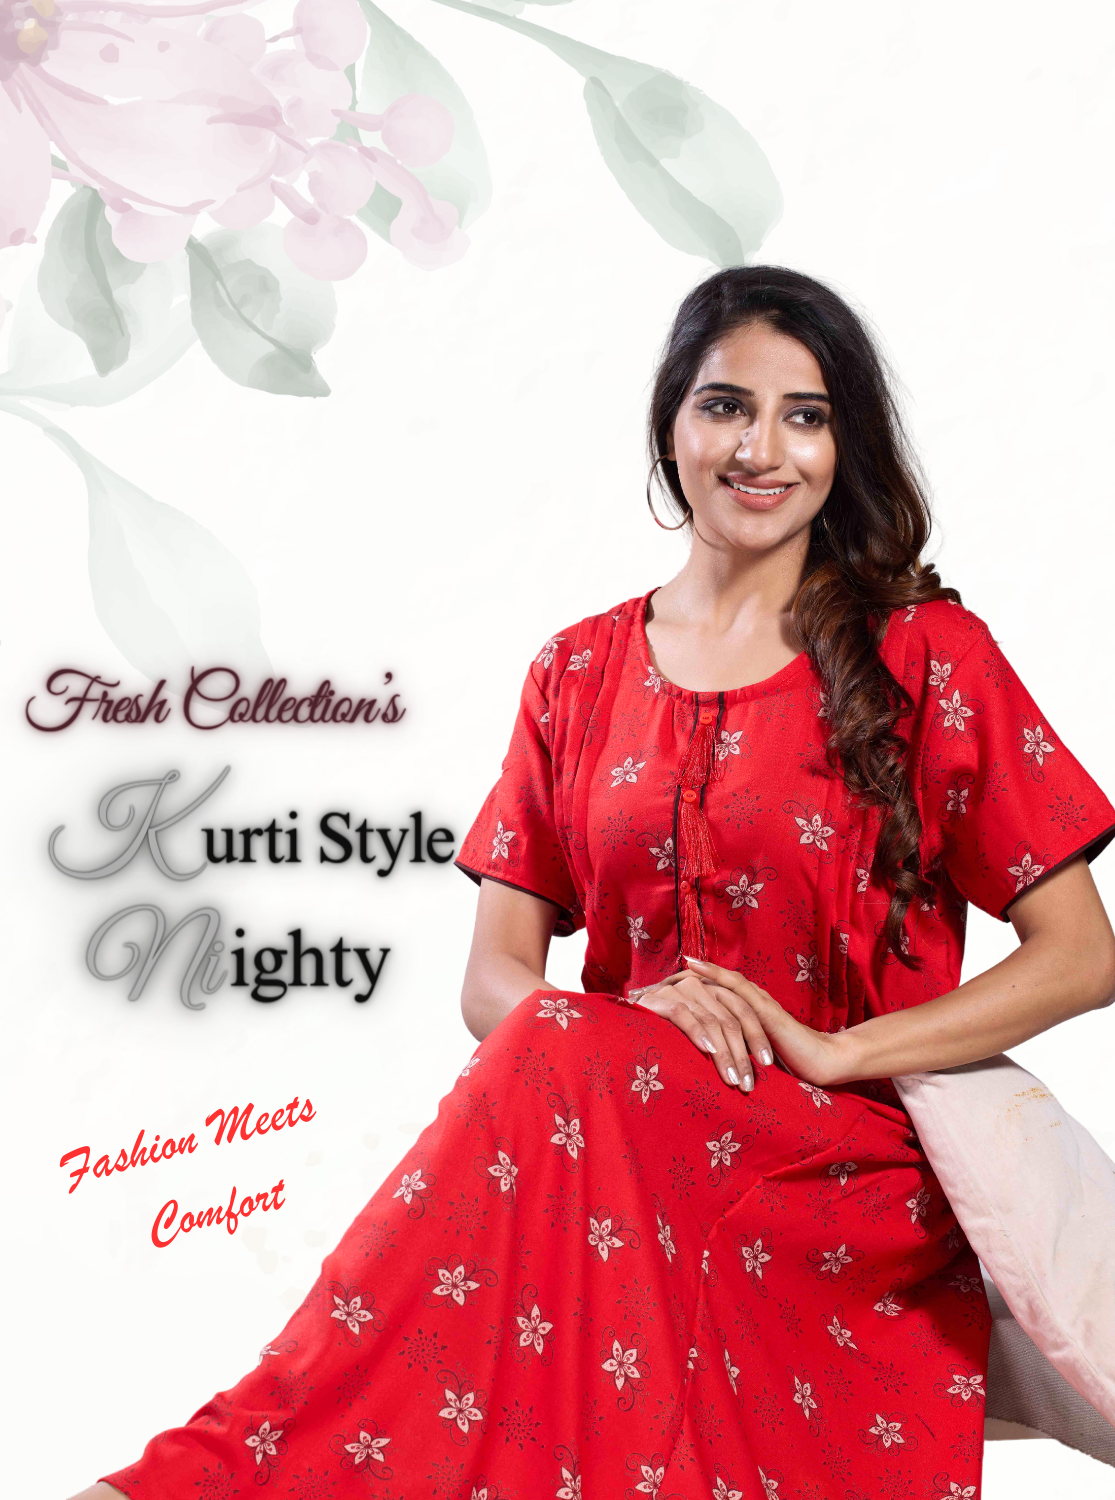 Fresh MANGAI New Soft Alpine KURTI Style | Beautiful Stylish KURTI Model | Half Sleeve |Fresh Arrivals for Stylish Women's